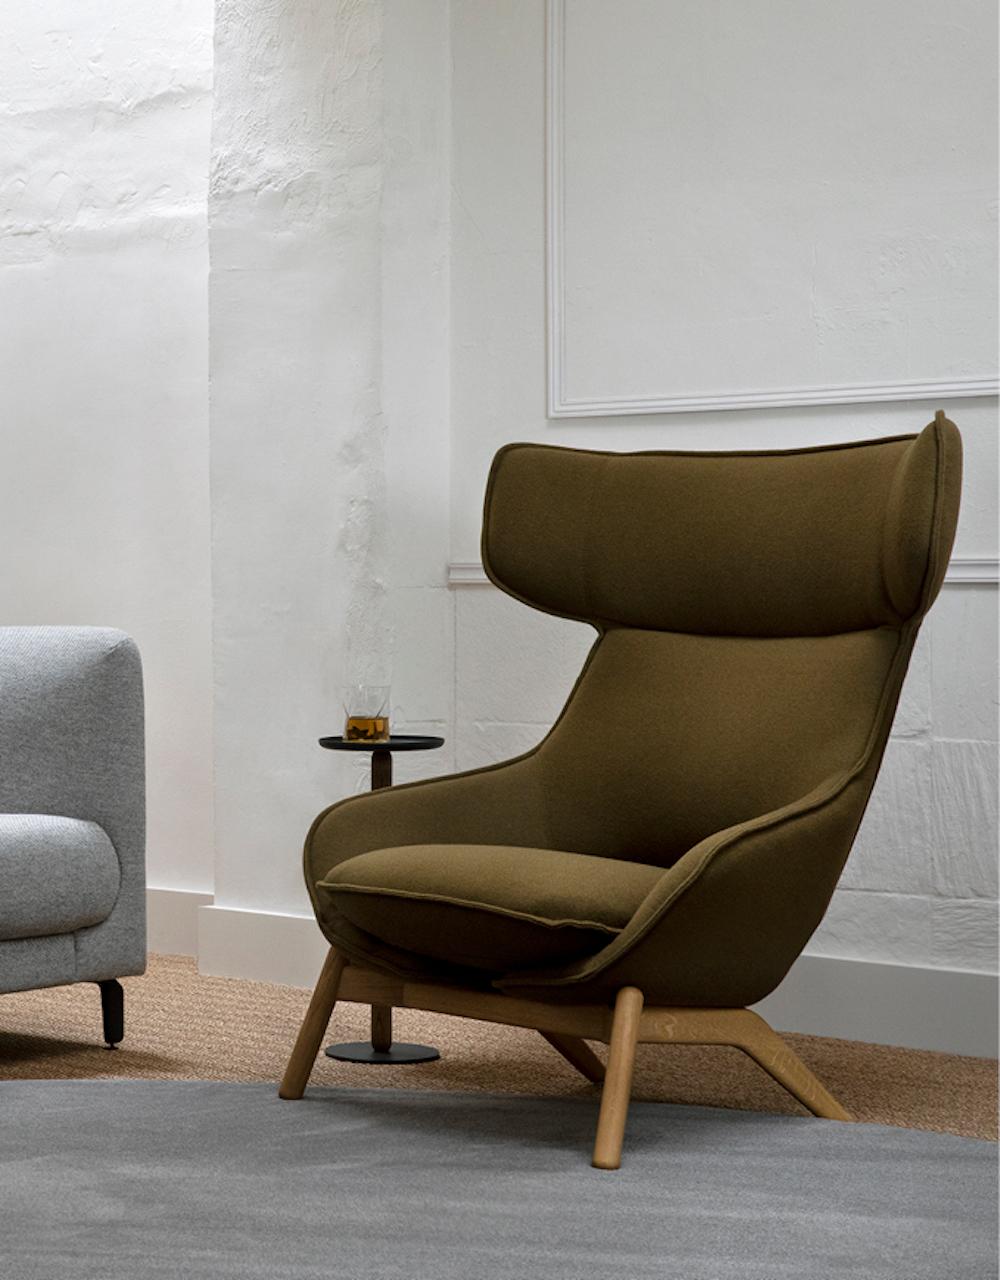 Kalm est le nouveau grand fauteuil confortable d'Artifort, créé par notre designer français Patrick Norguet. C'est un sanctuaire à part entière, un endroit où l'on peut se détendre et se mettre à l'aise. Avec Kalm, Patrick Norguet a créé un fauteuil